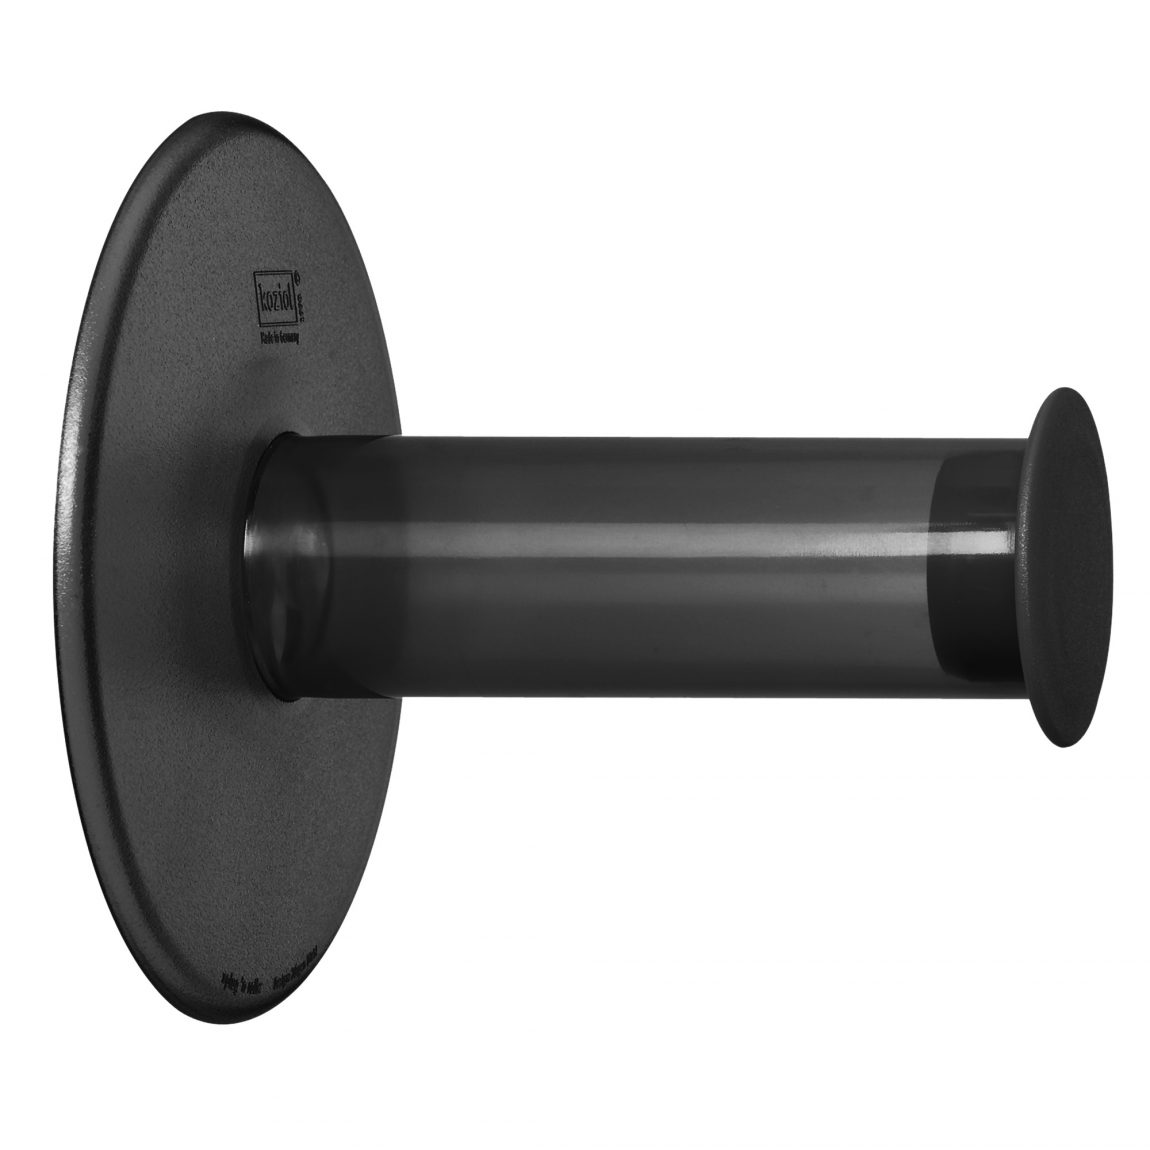 zwarte-koziol-plug-n-roll-toiletrolhouder